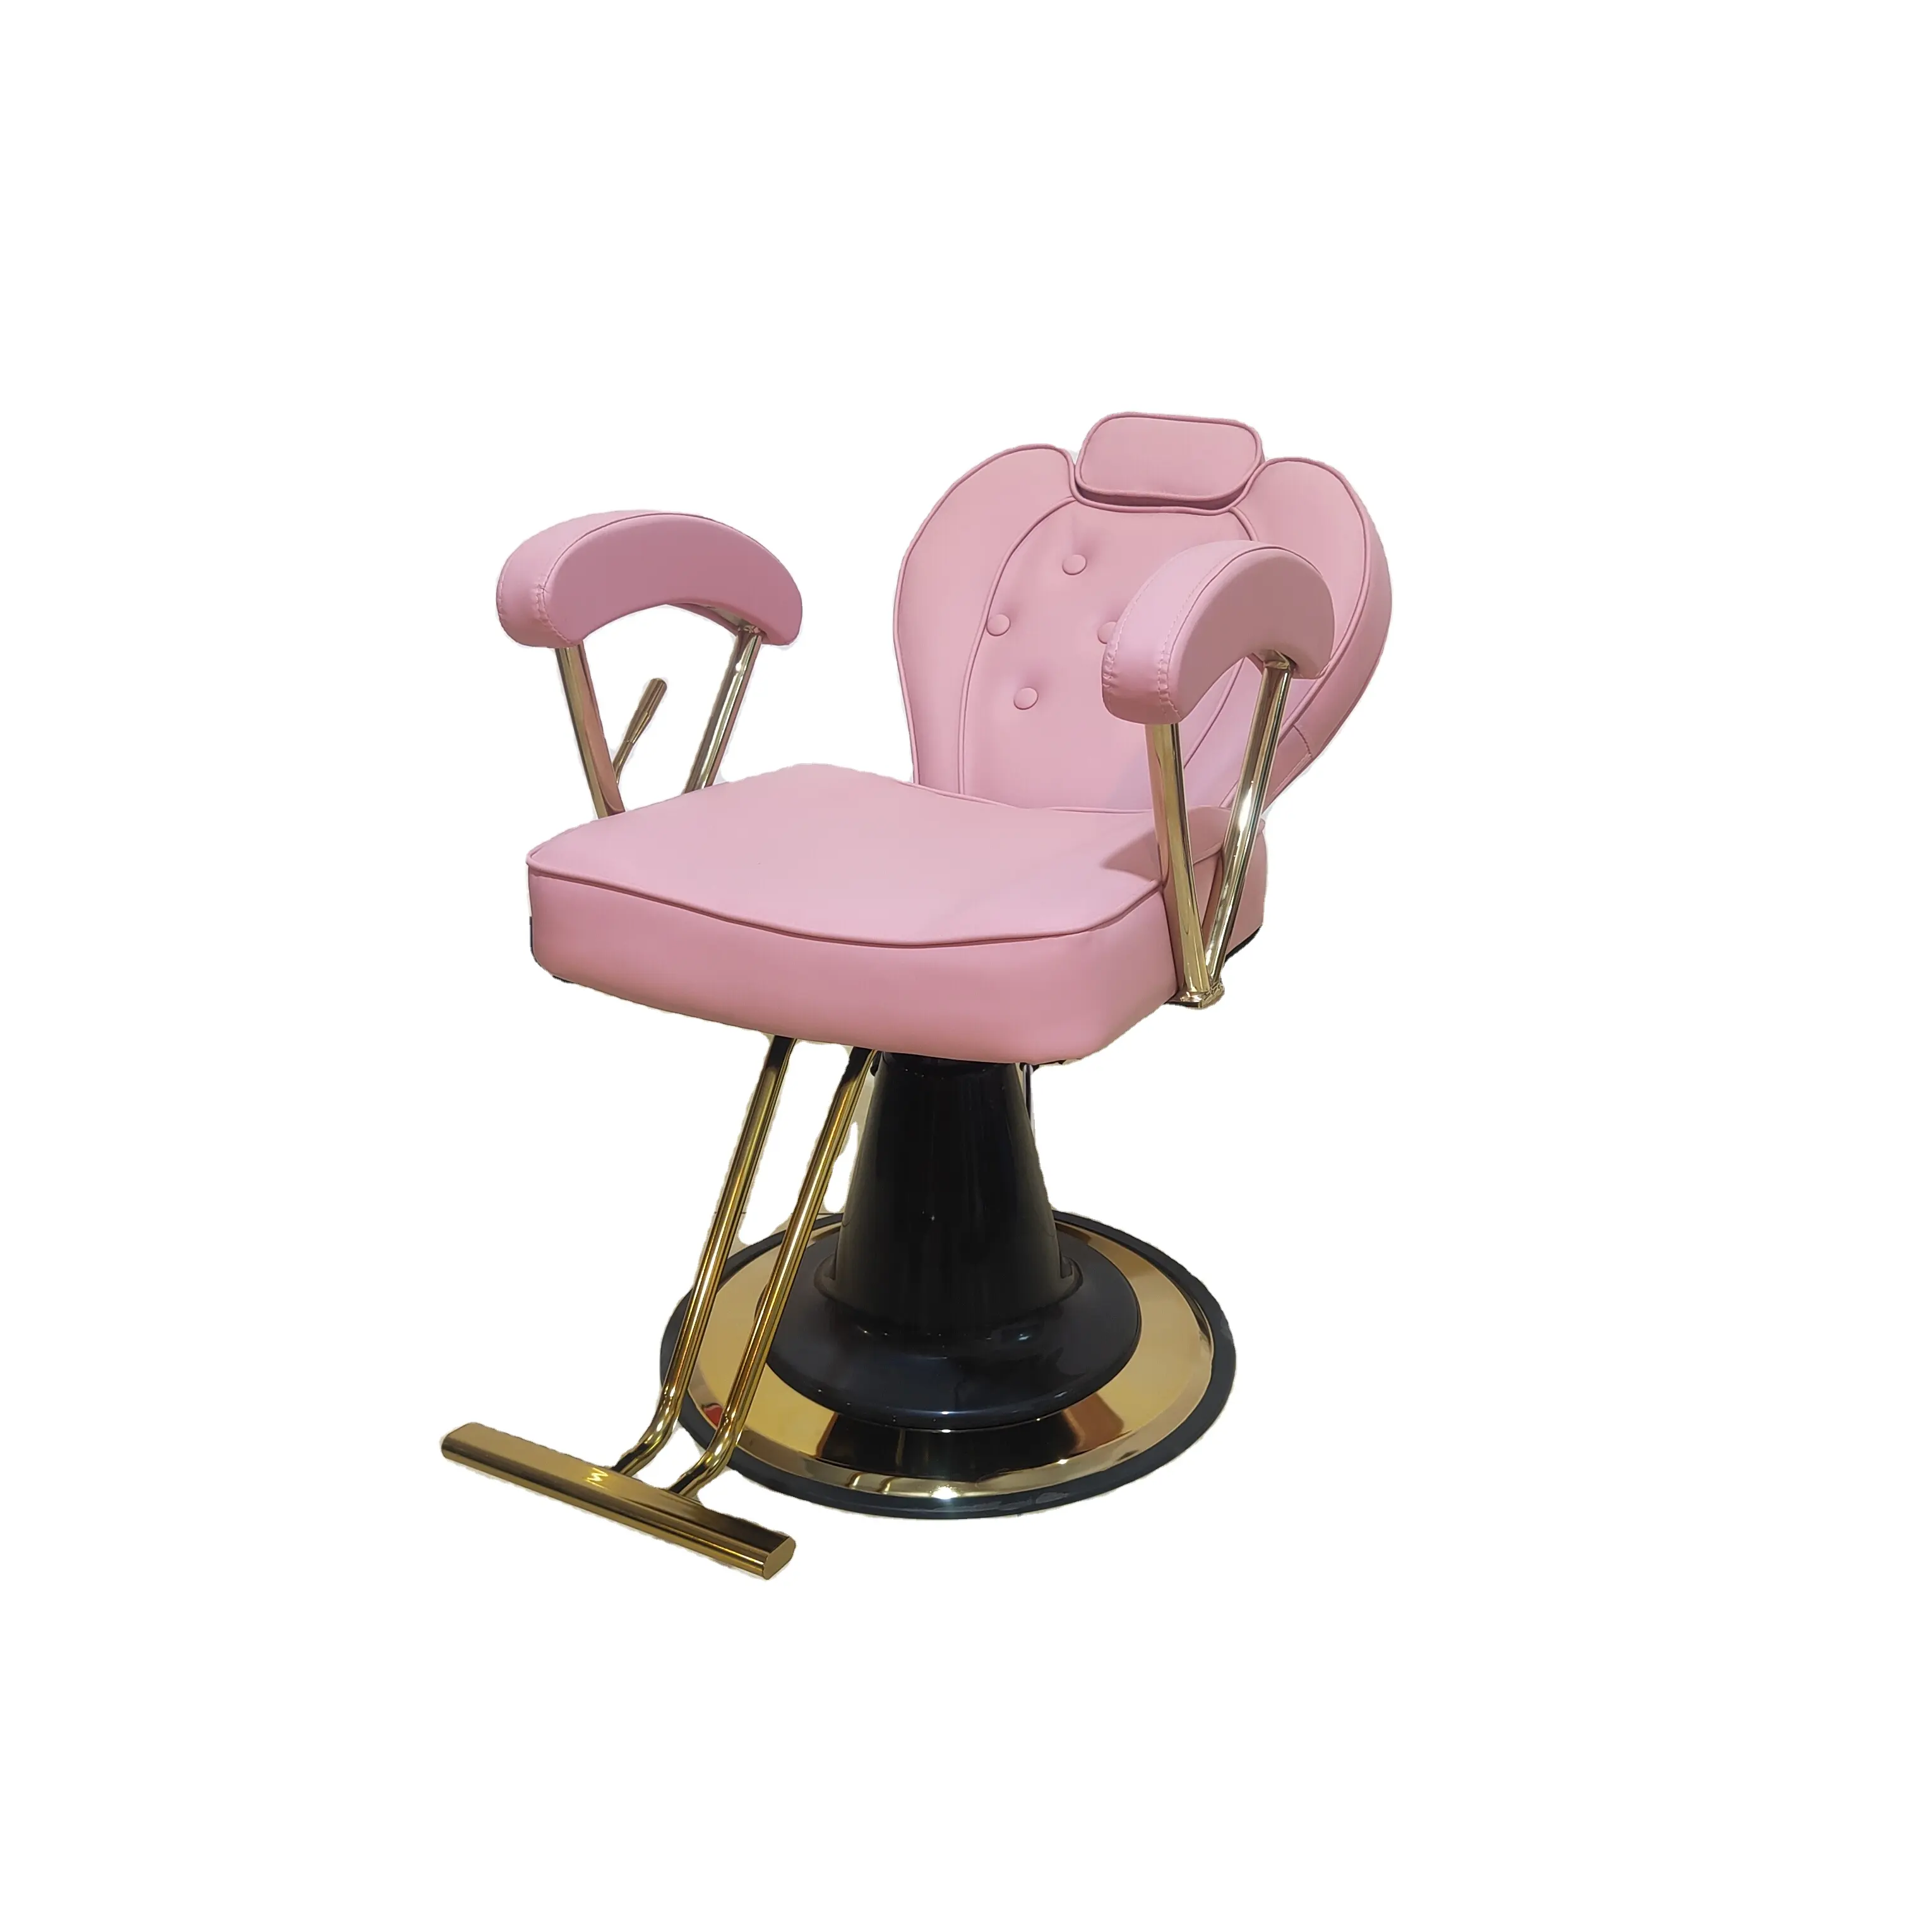 Silla de peluquero giratoria de cuero rosa de alta calidad, sillón reclinable multiusos con Base redonda dorada para Estilismo de peluquería